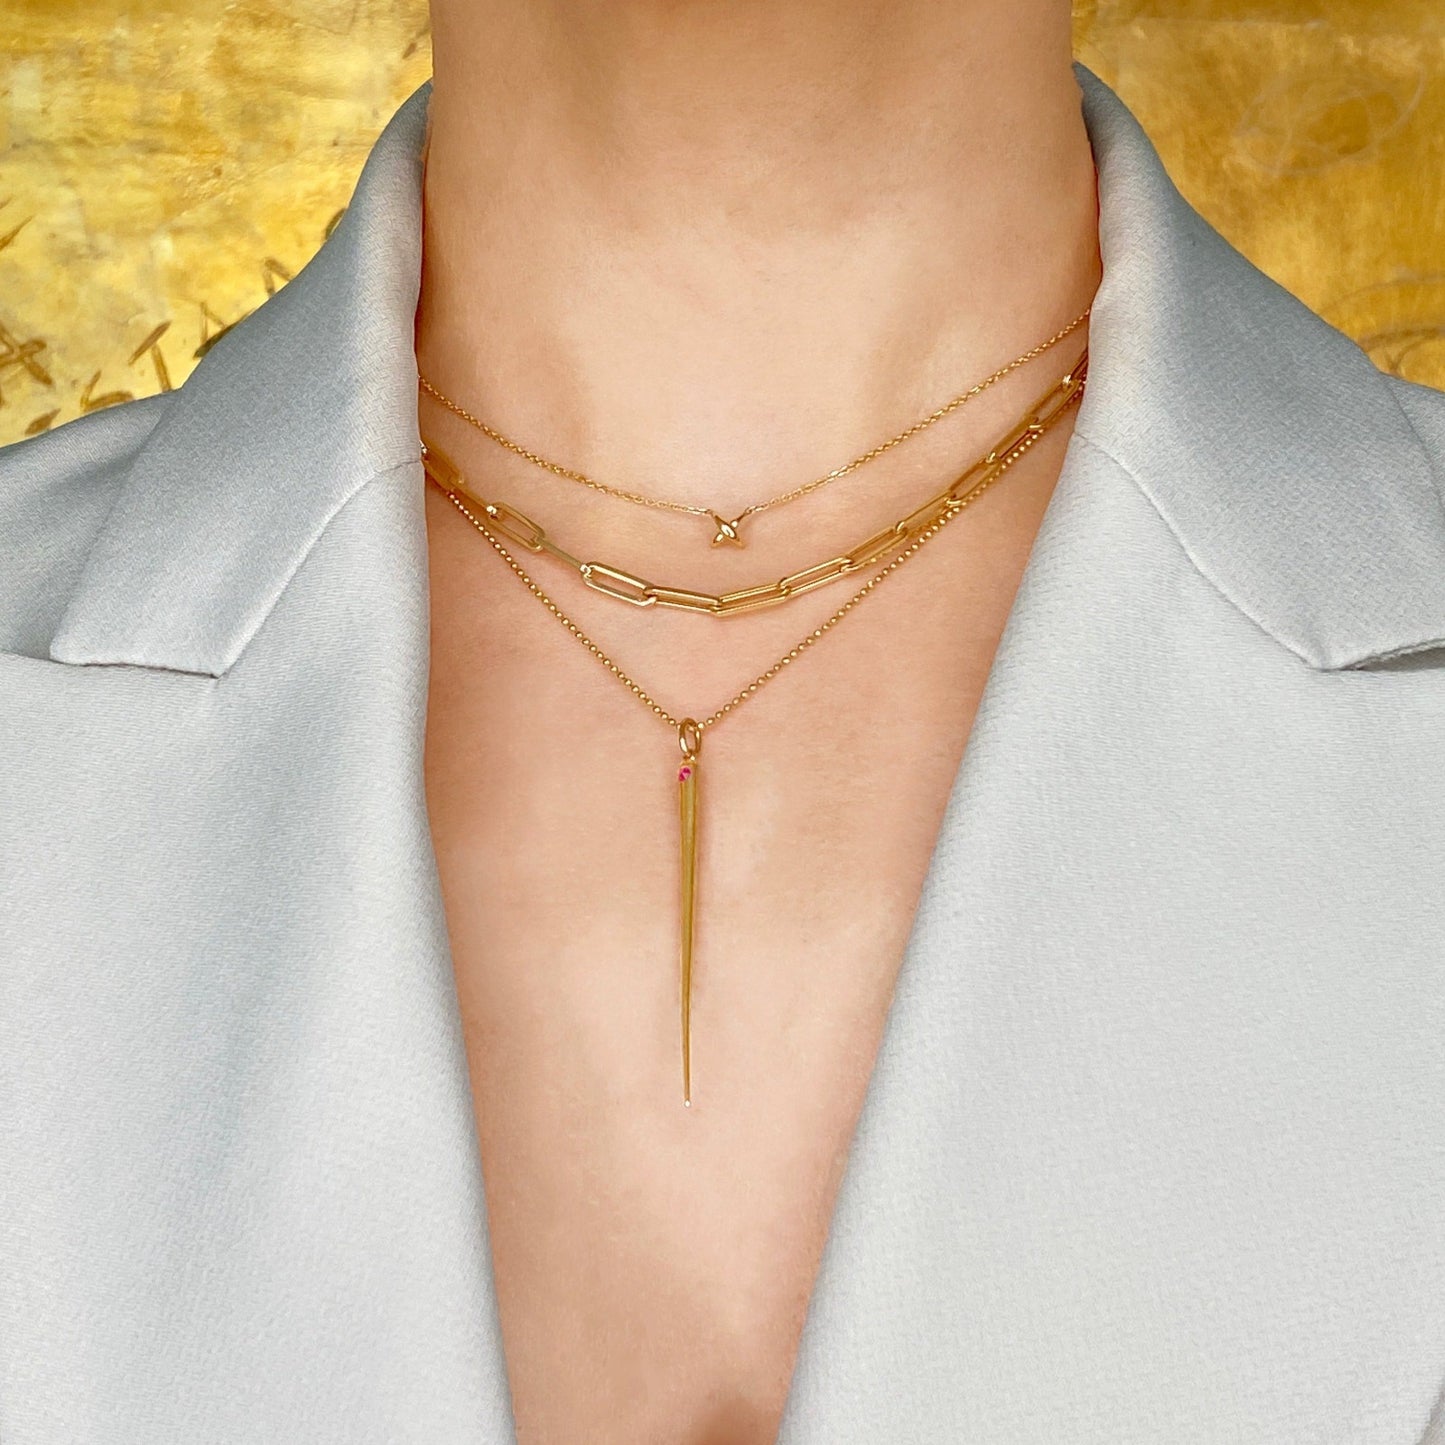 14k gold Stitch Necklace styled on a neck